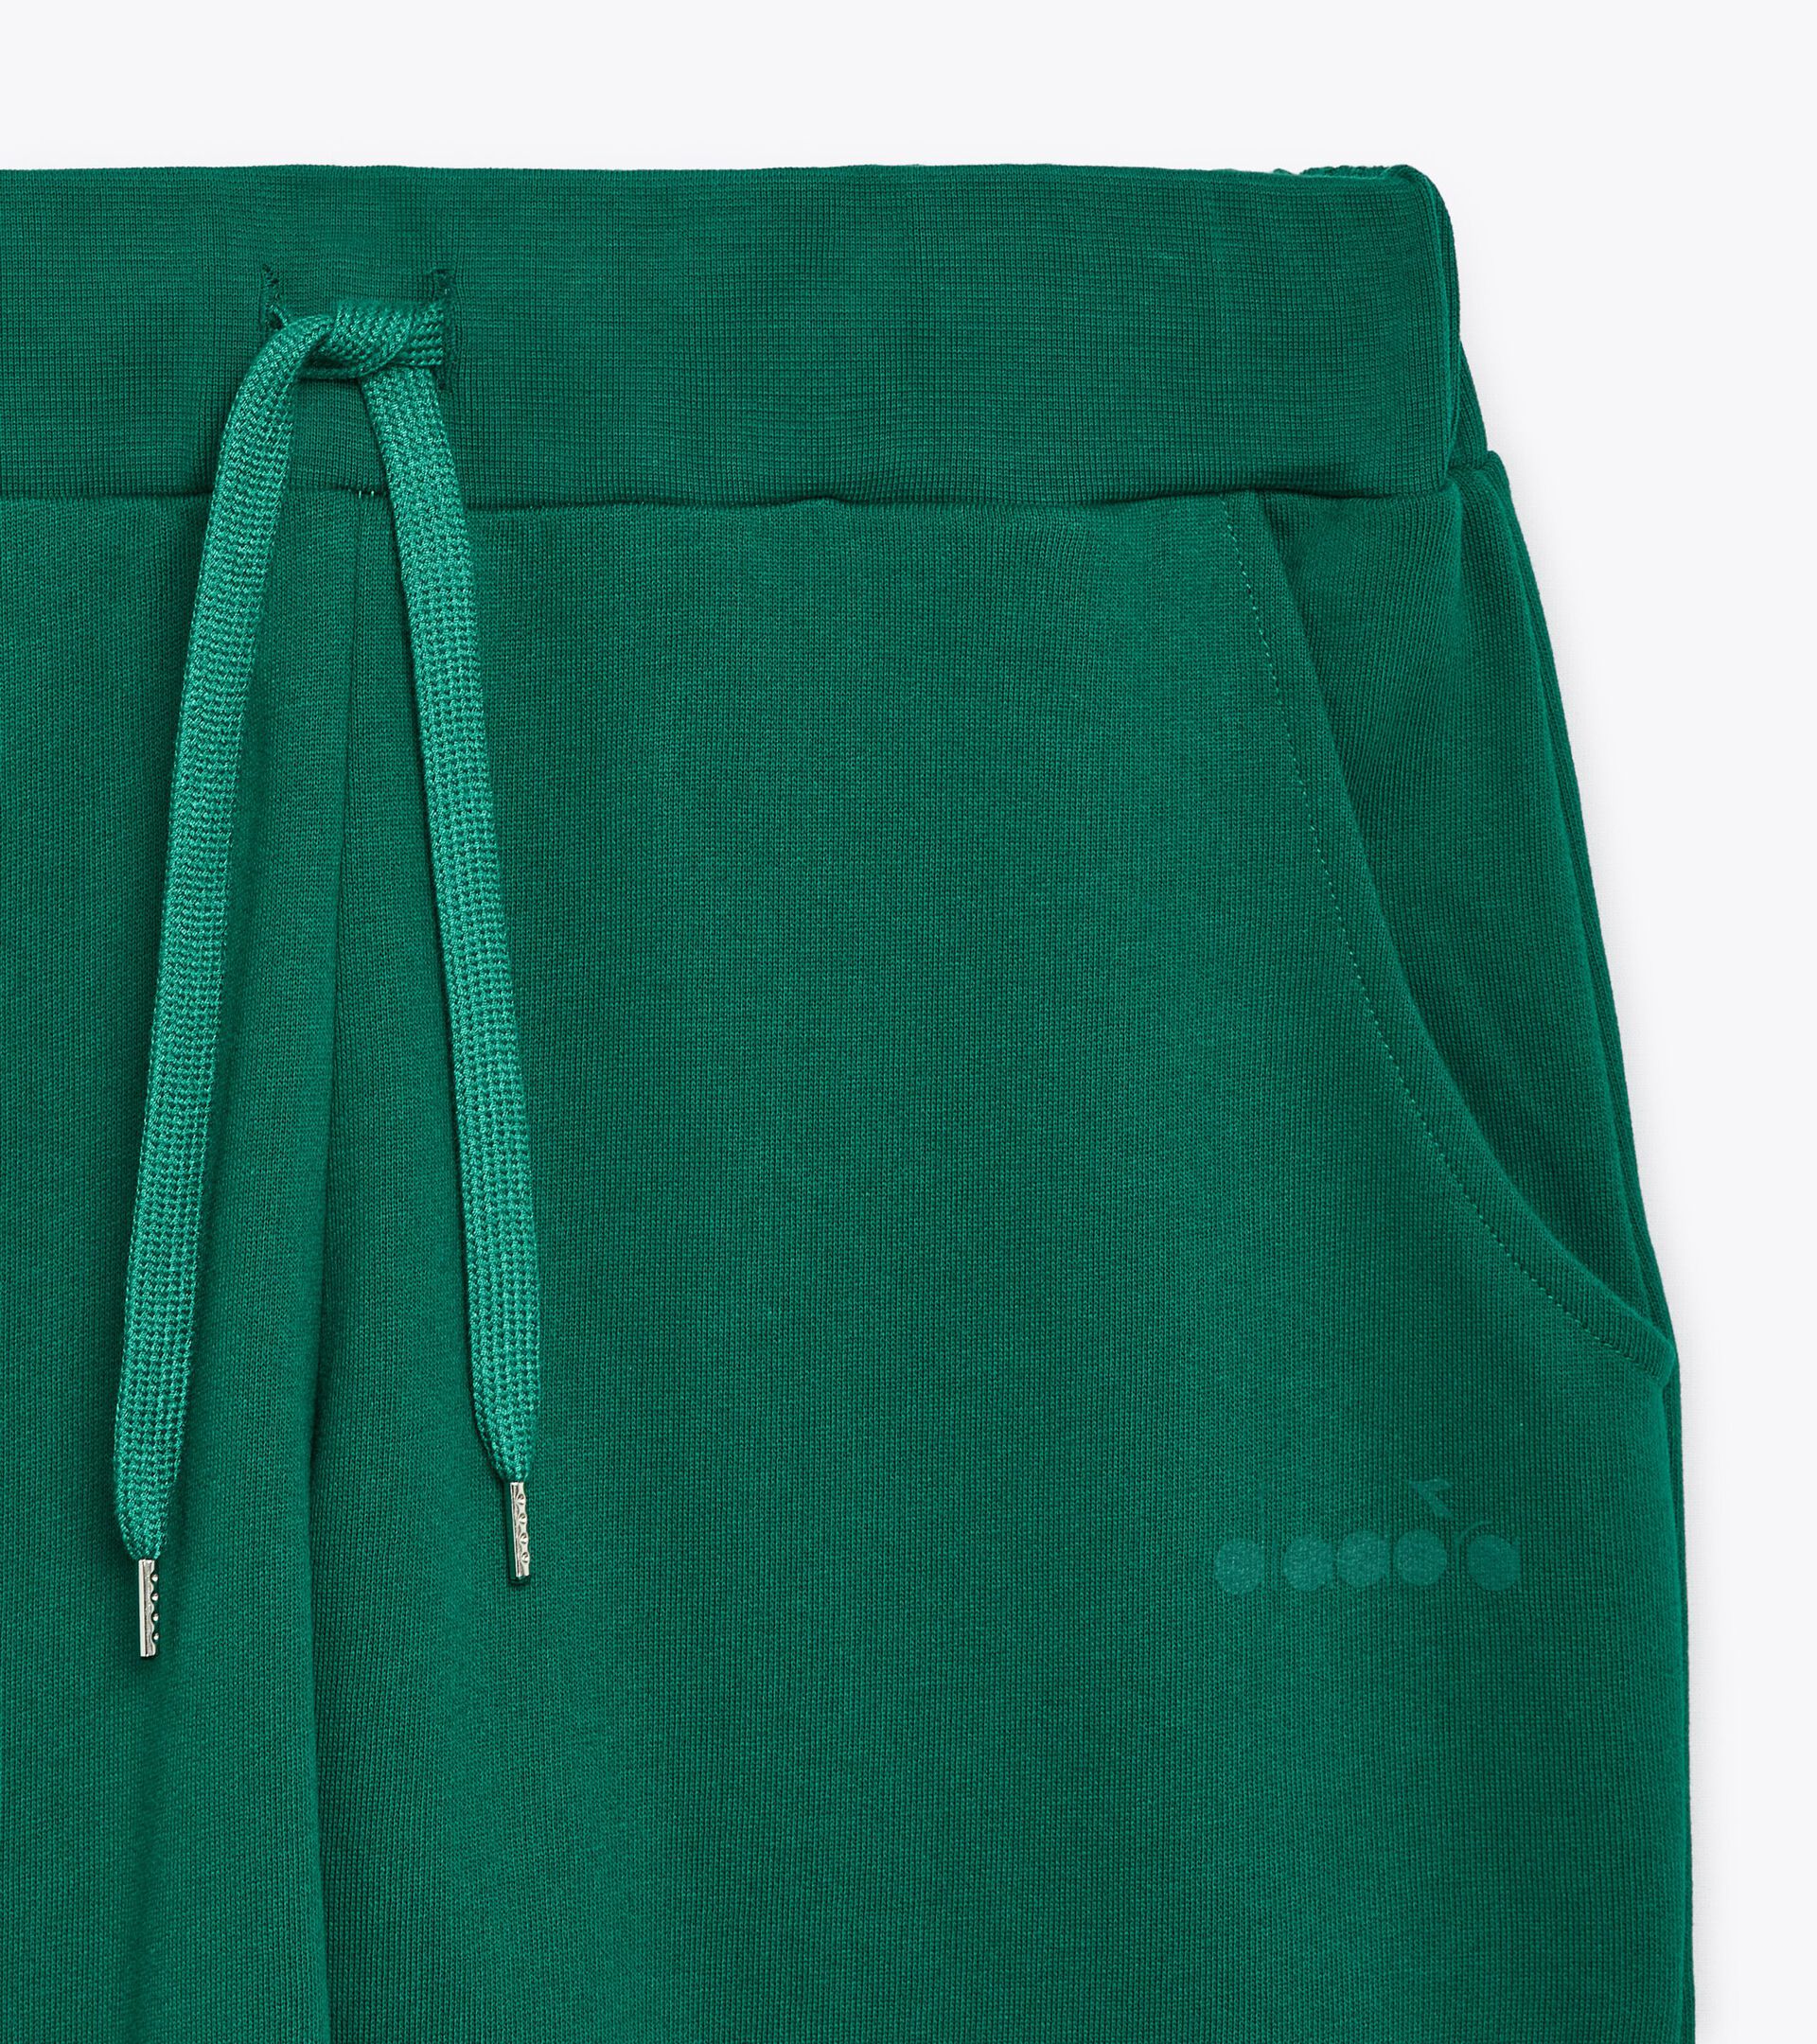 Pantalón deportivo - Made in Italy - Gender neutral PANTS LOGO VERDE VENTURINA - Diadora